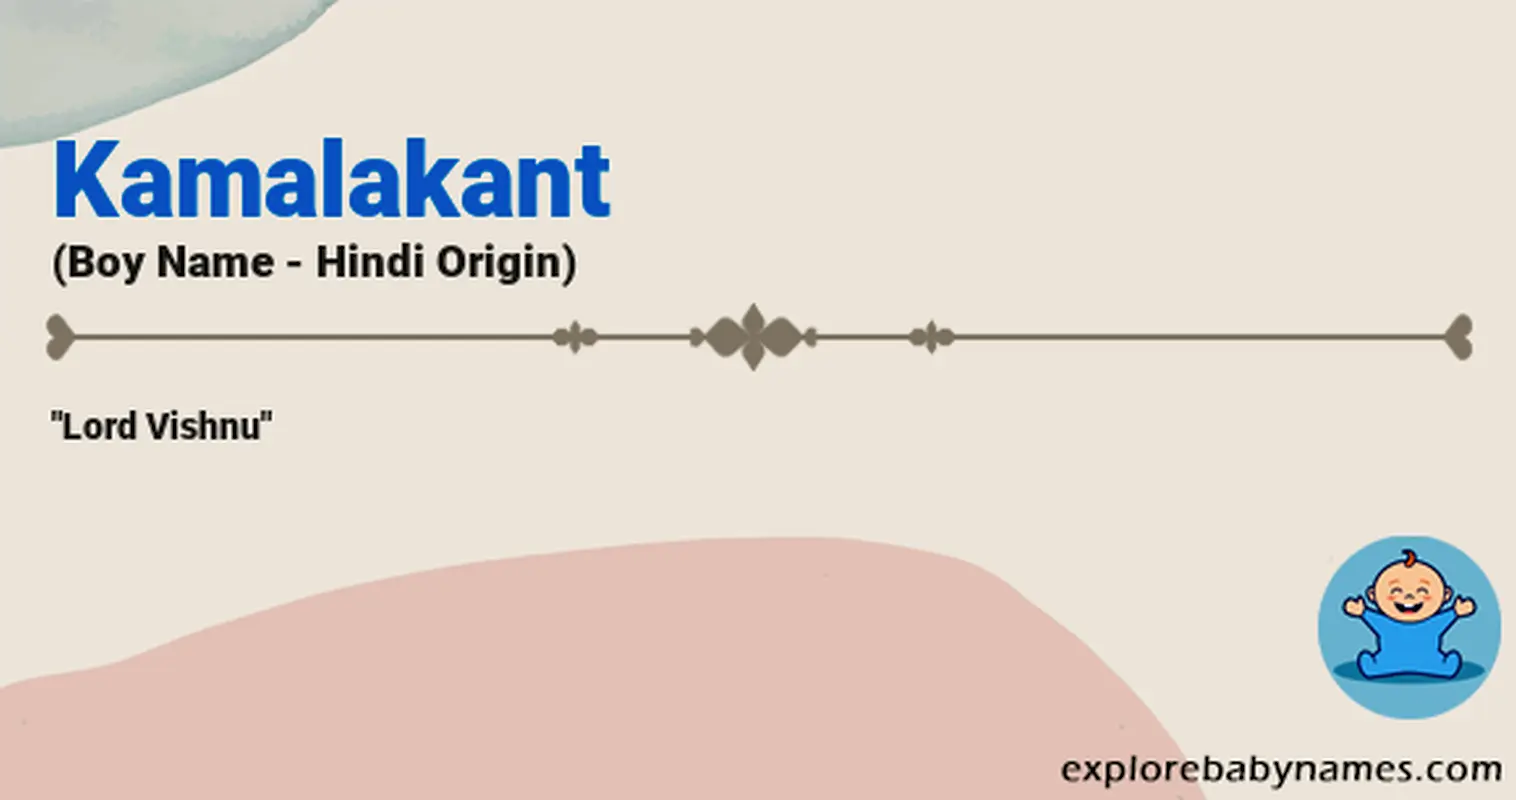 Meaning of Kamalakant